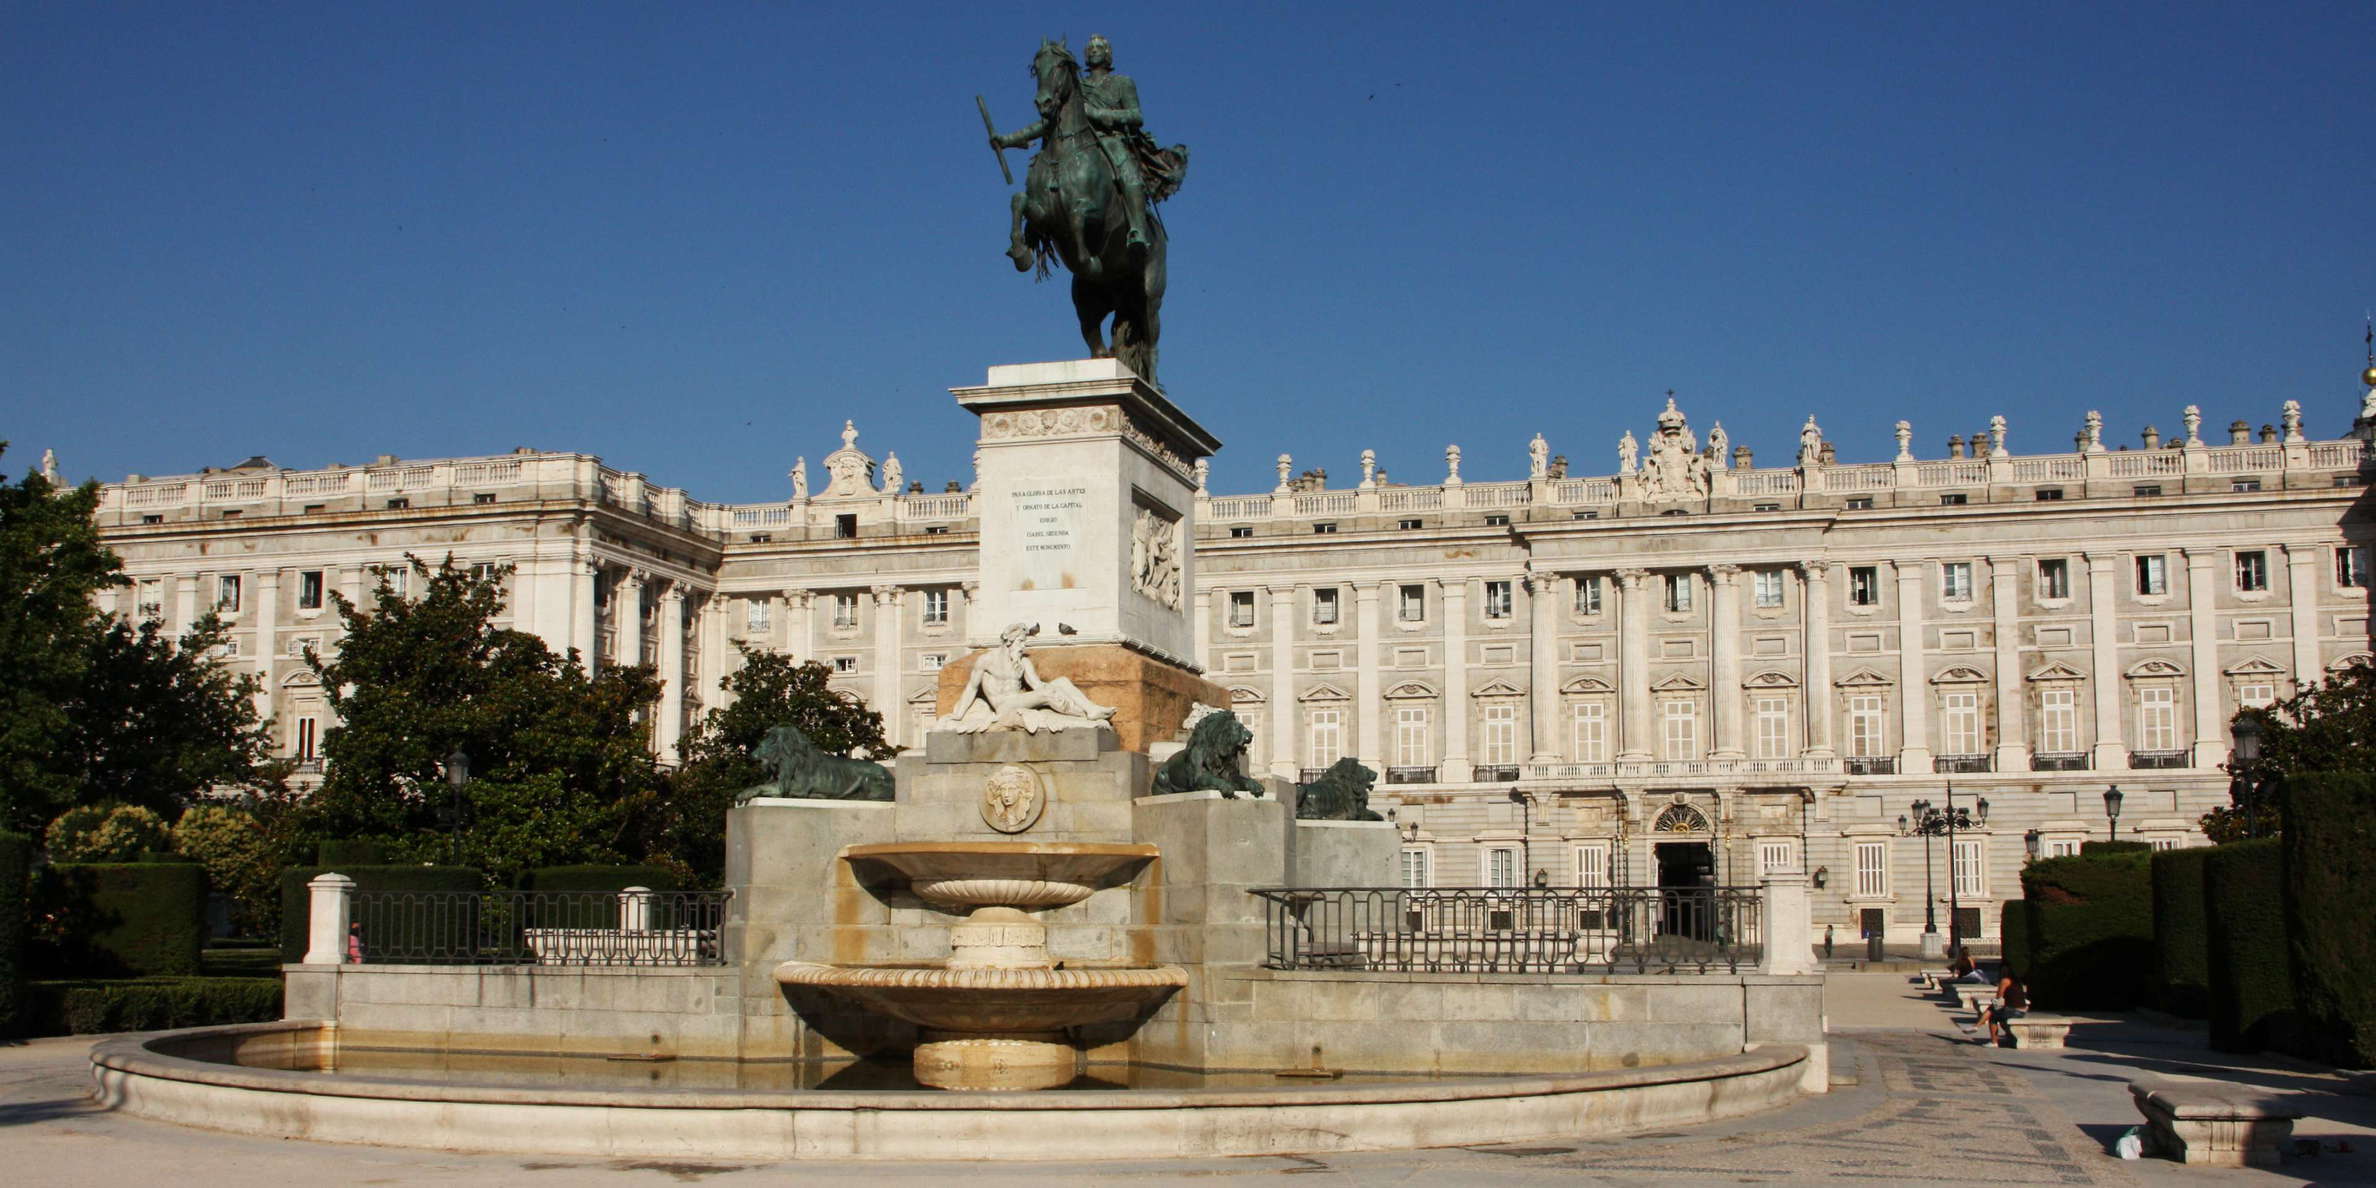 Madrid | Plaza de Oriente and Palacio Real